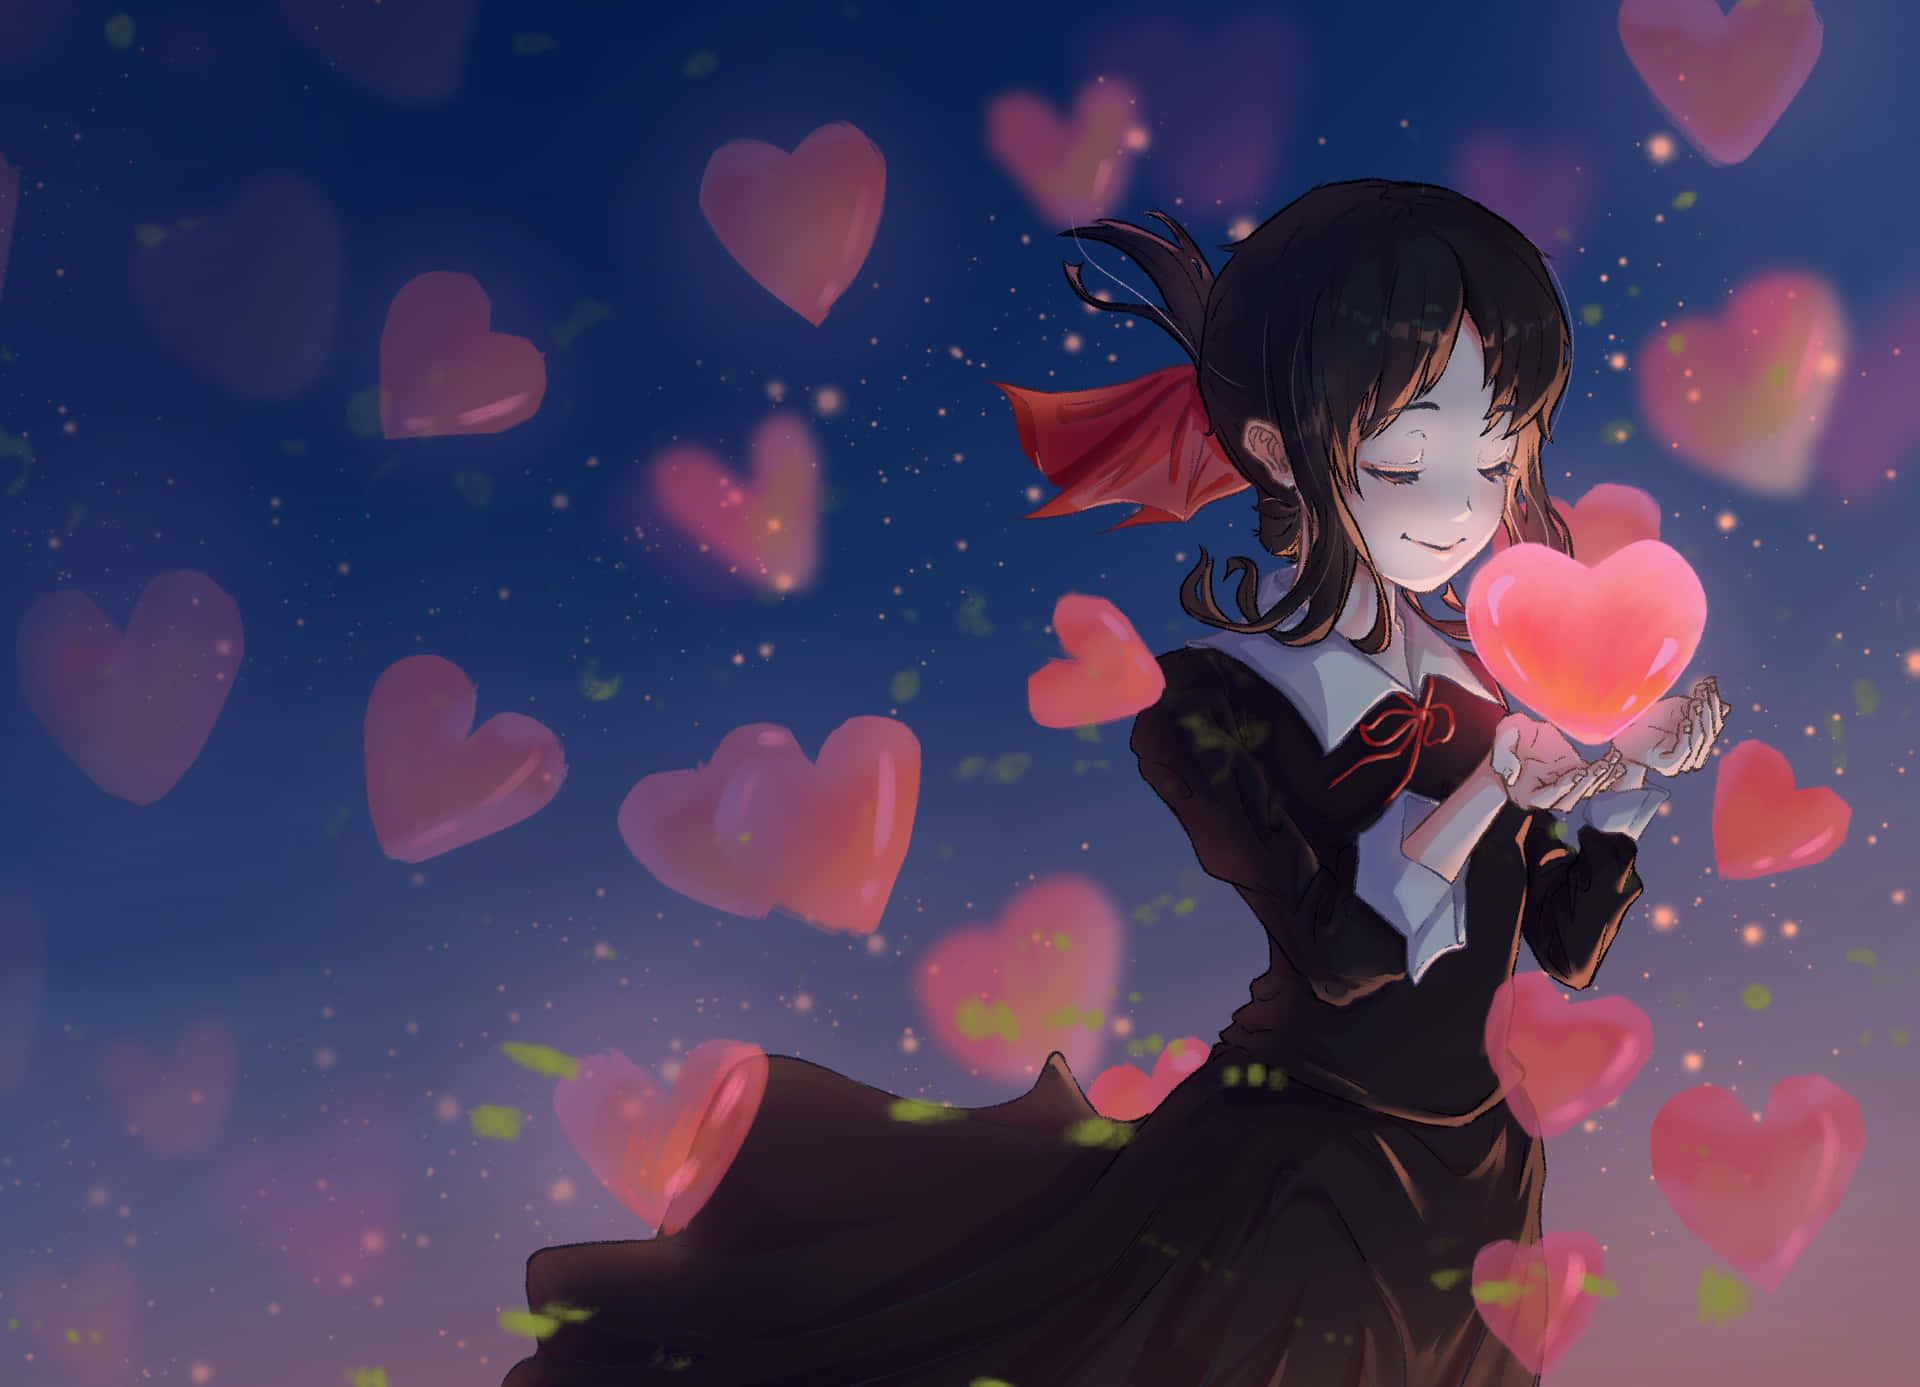 Lovely Anime Girl In Black [wallpaper] Wallpaper